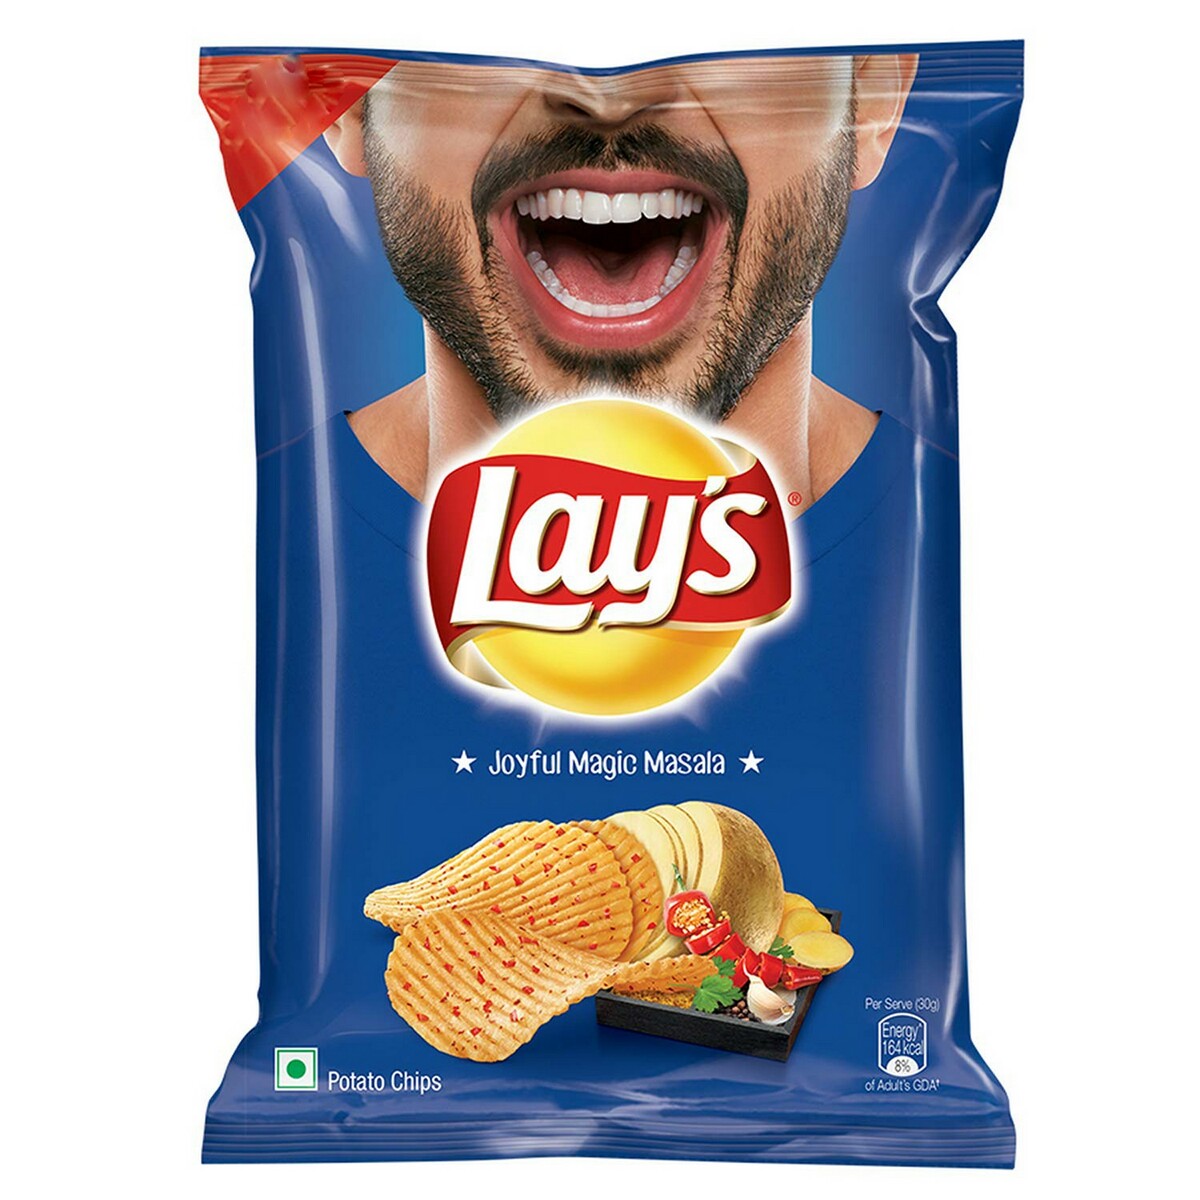 Lays Magic Masala Chips 50g